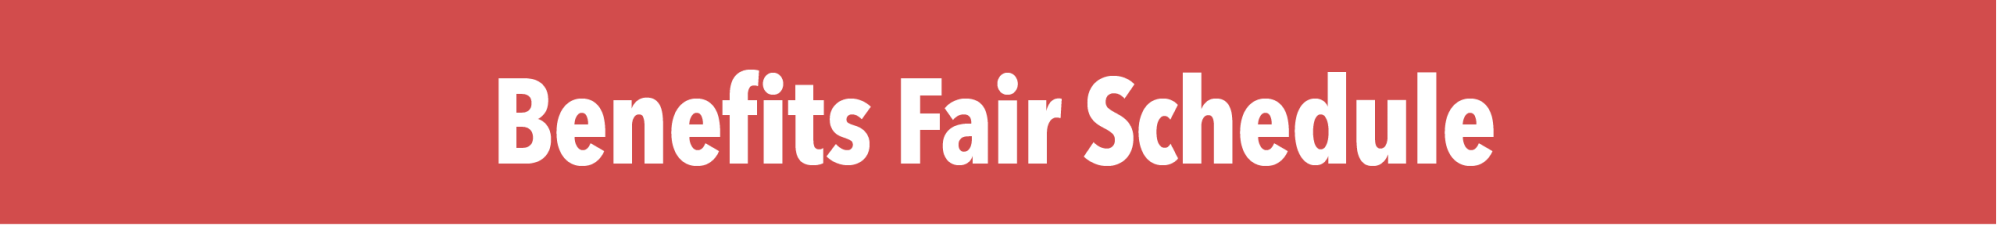 Benefits Fair Schedule banner